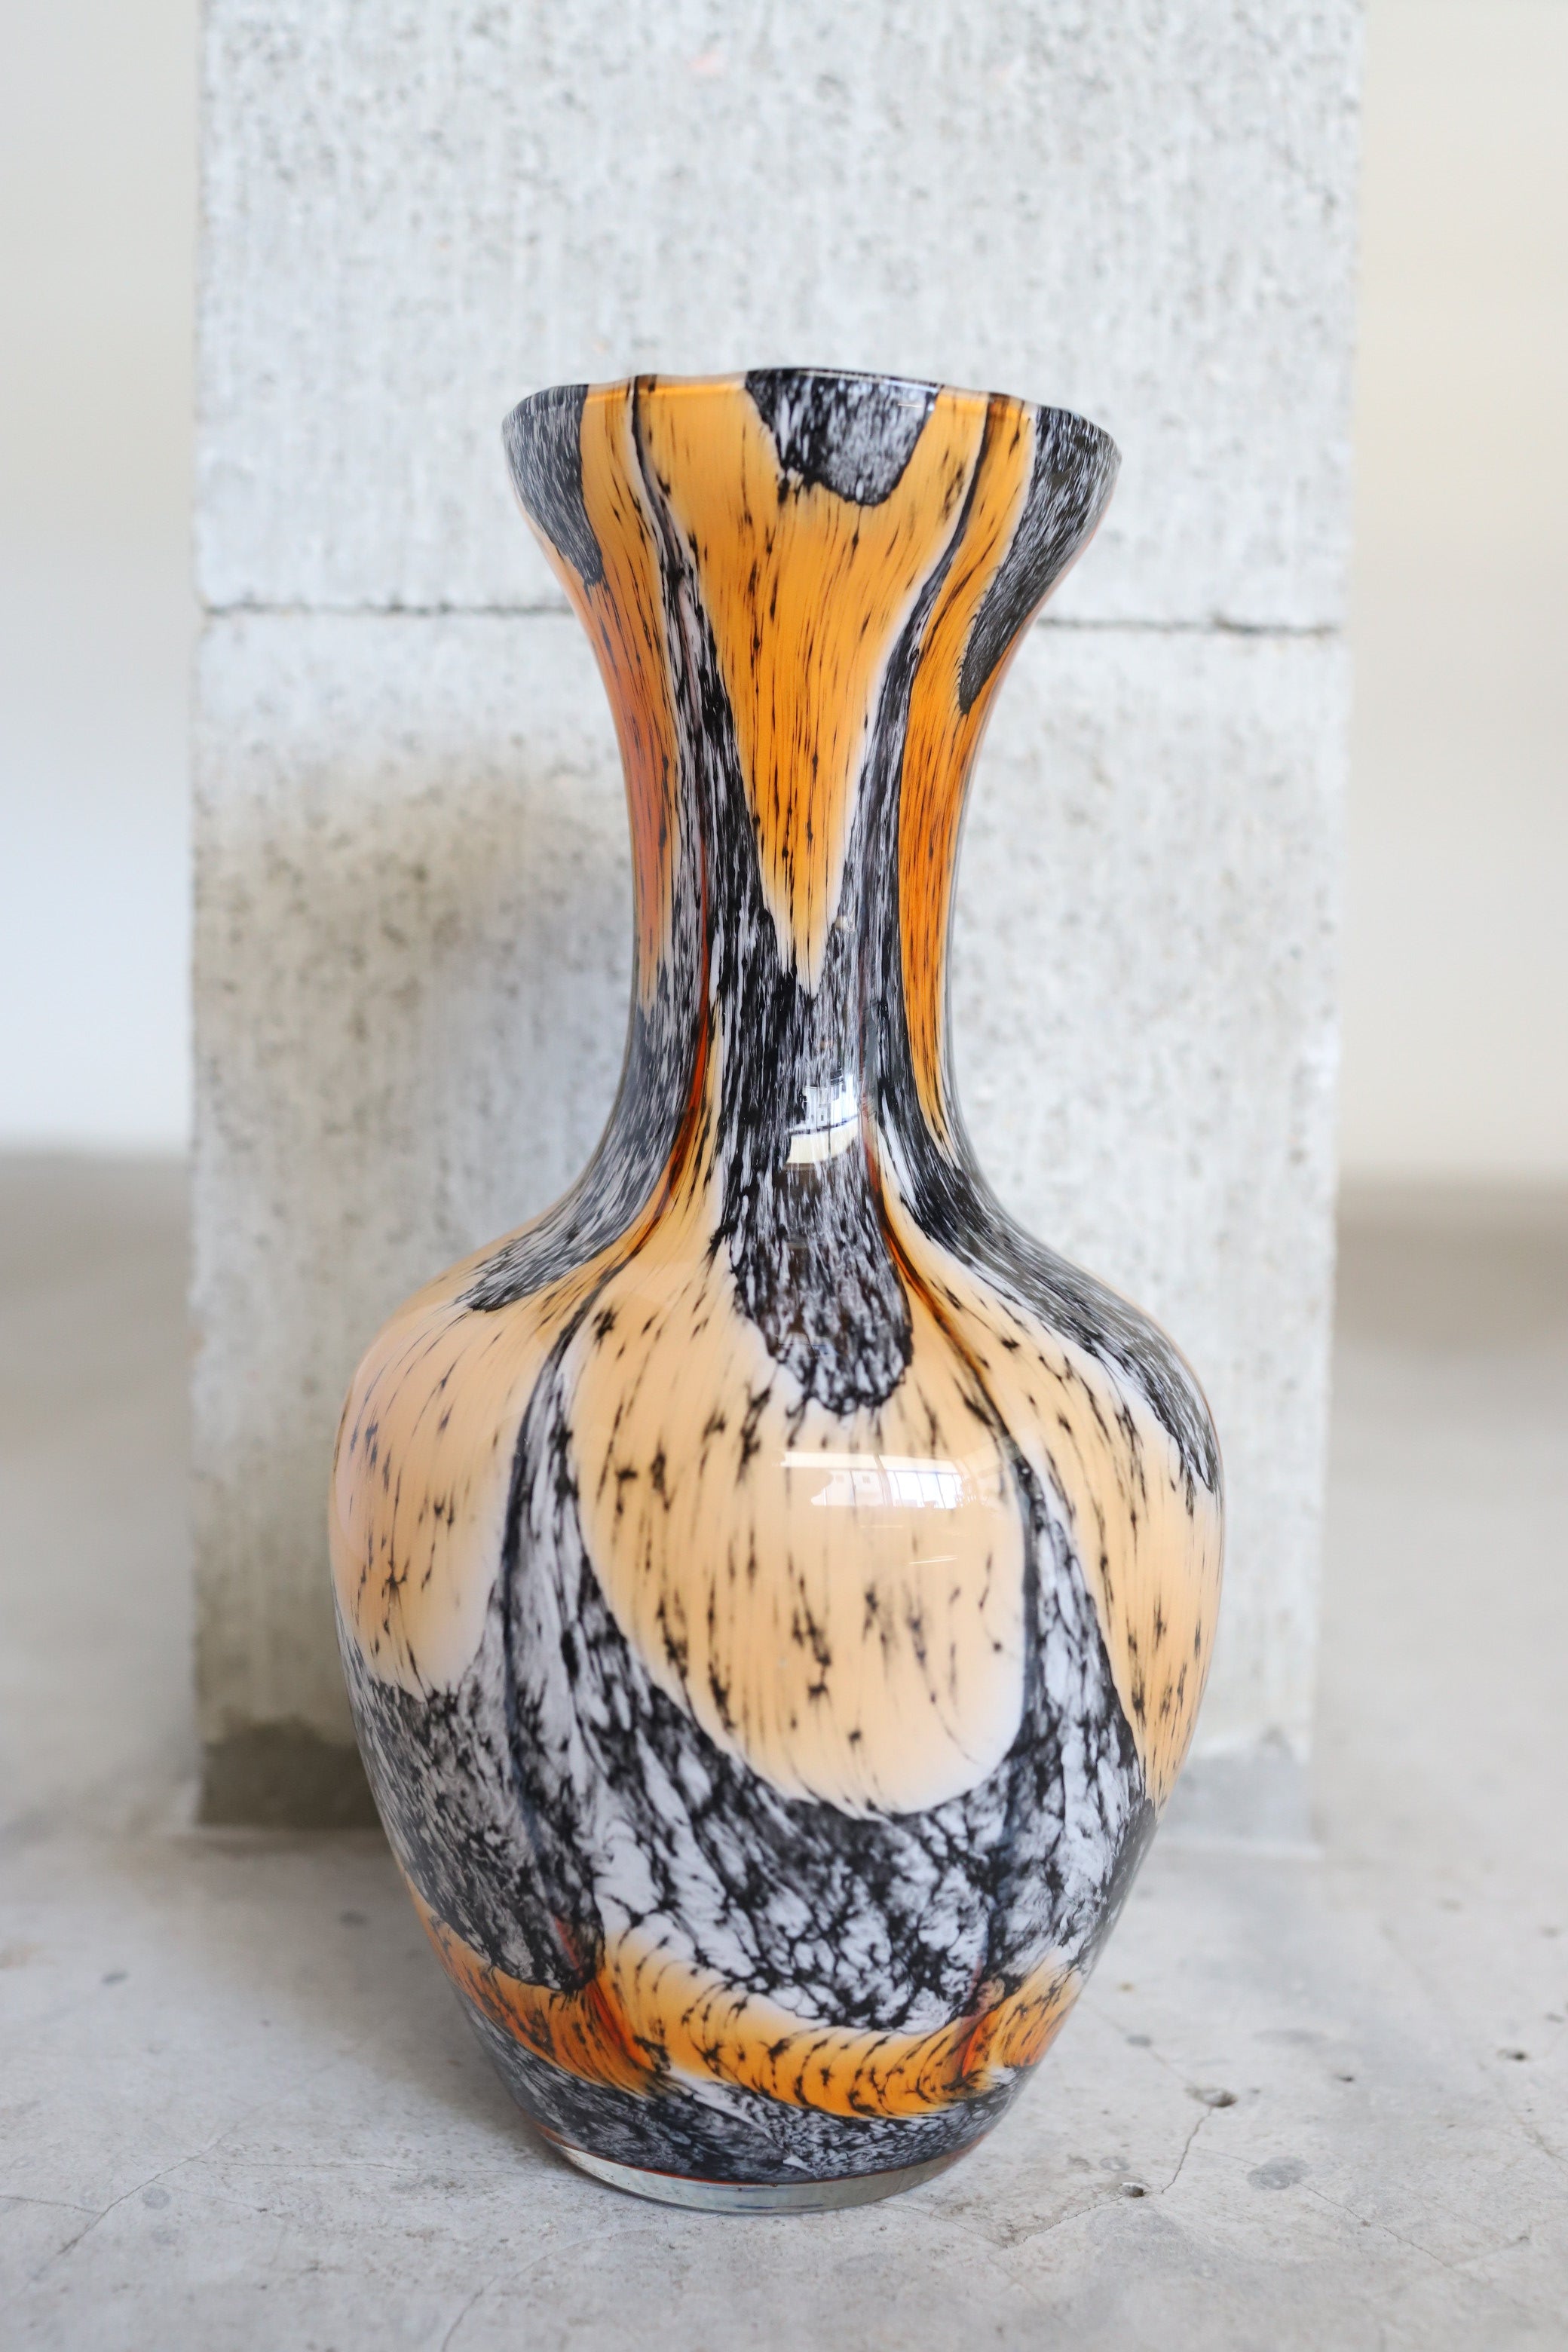 February Vase #11